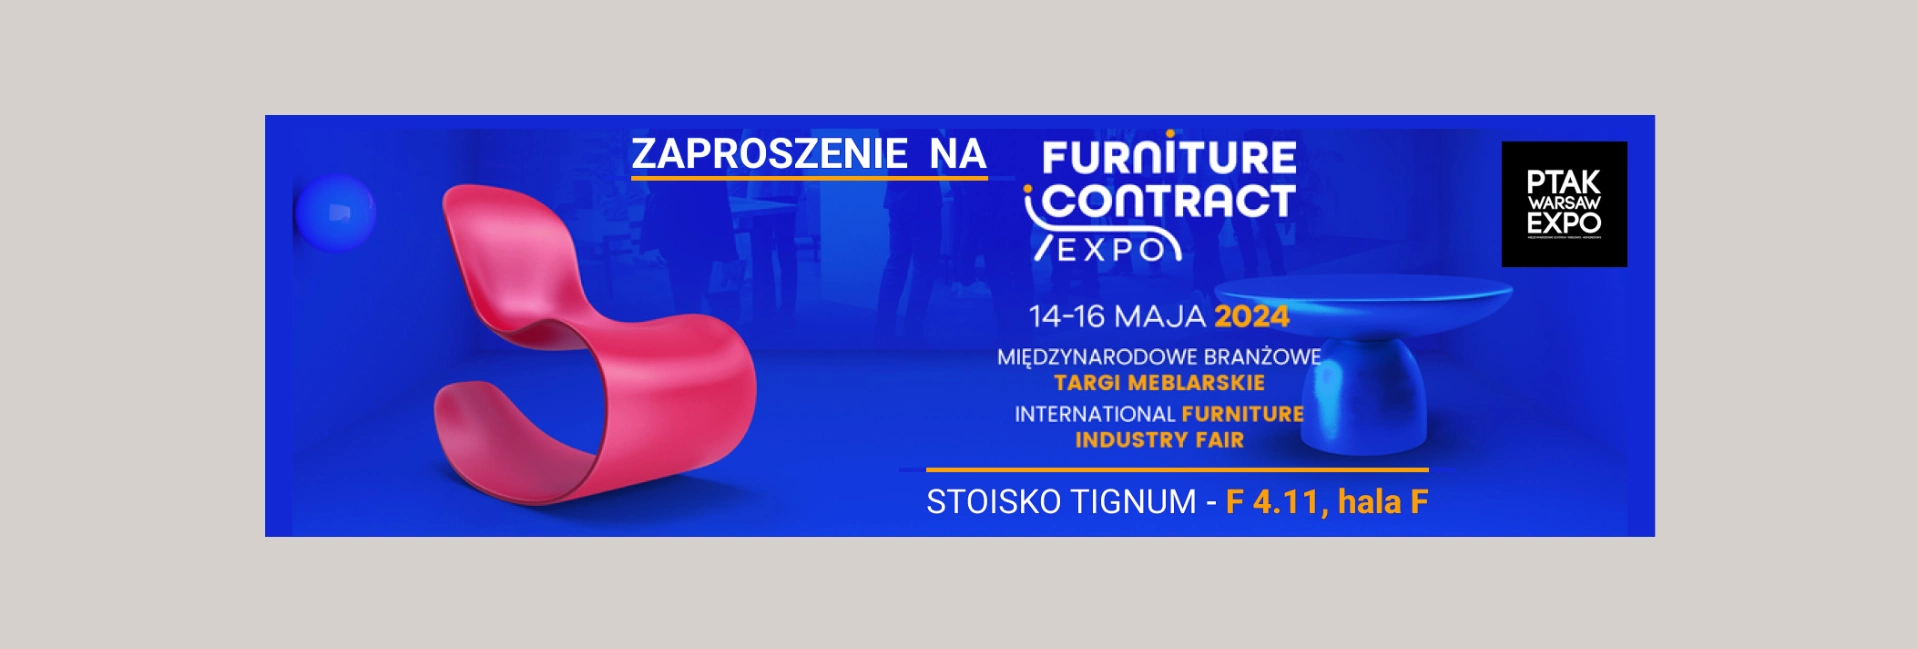 Tignum_targi_furniture_Contract_Expo-2